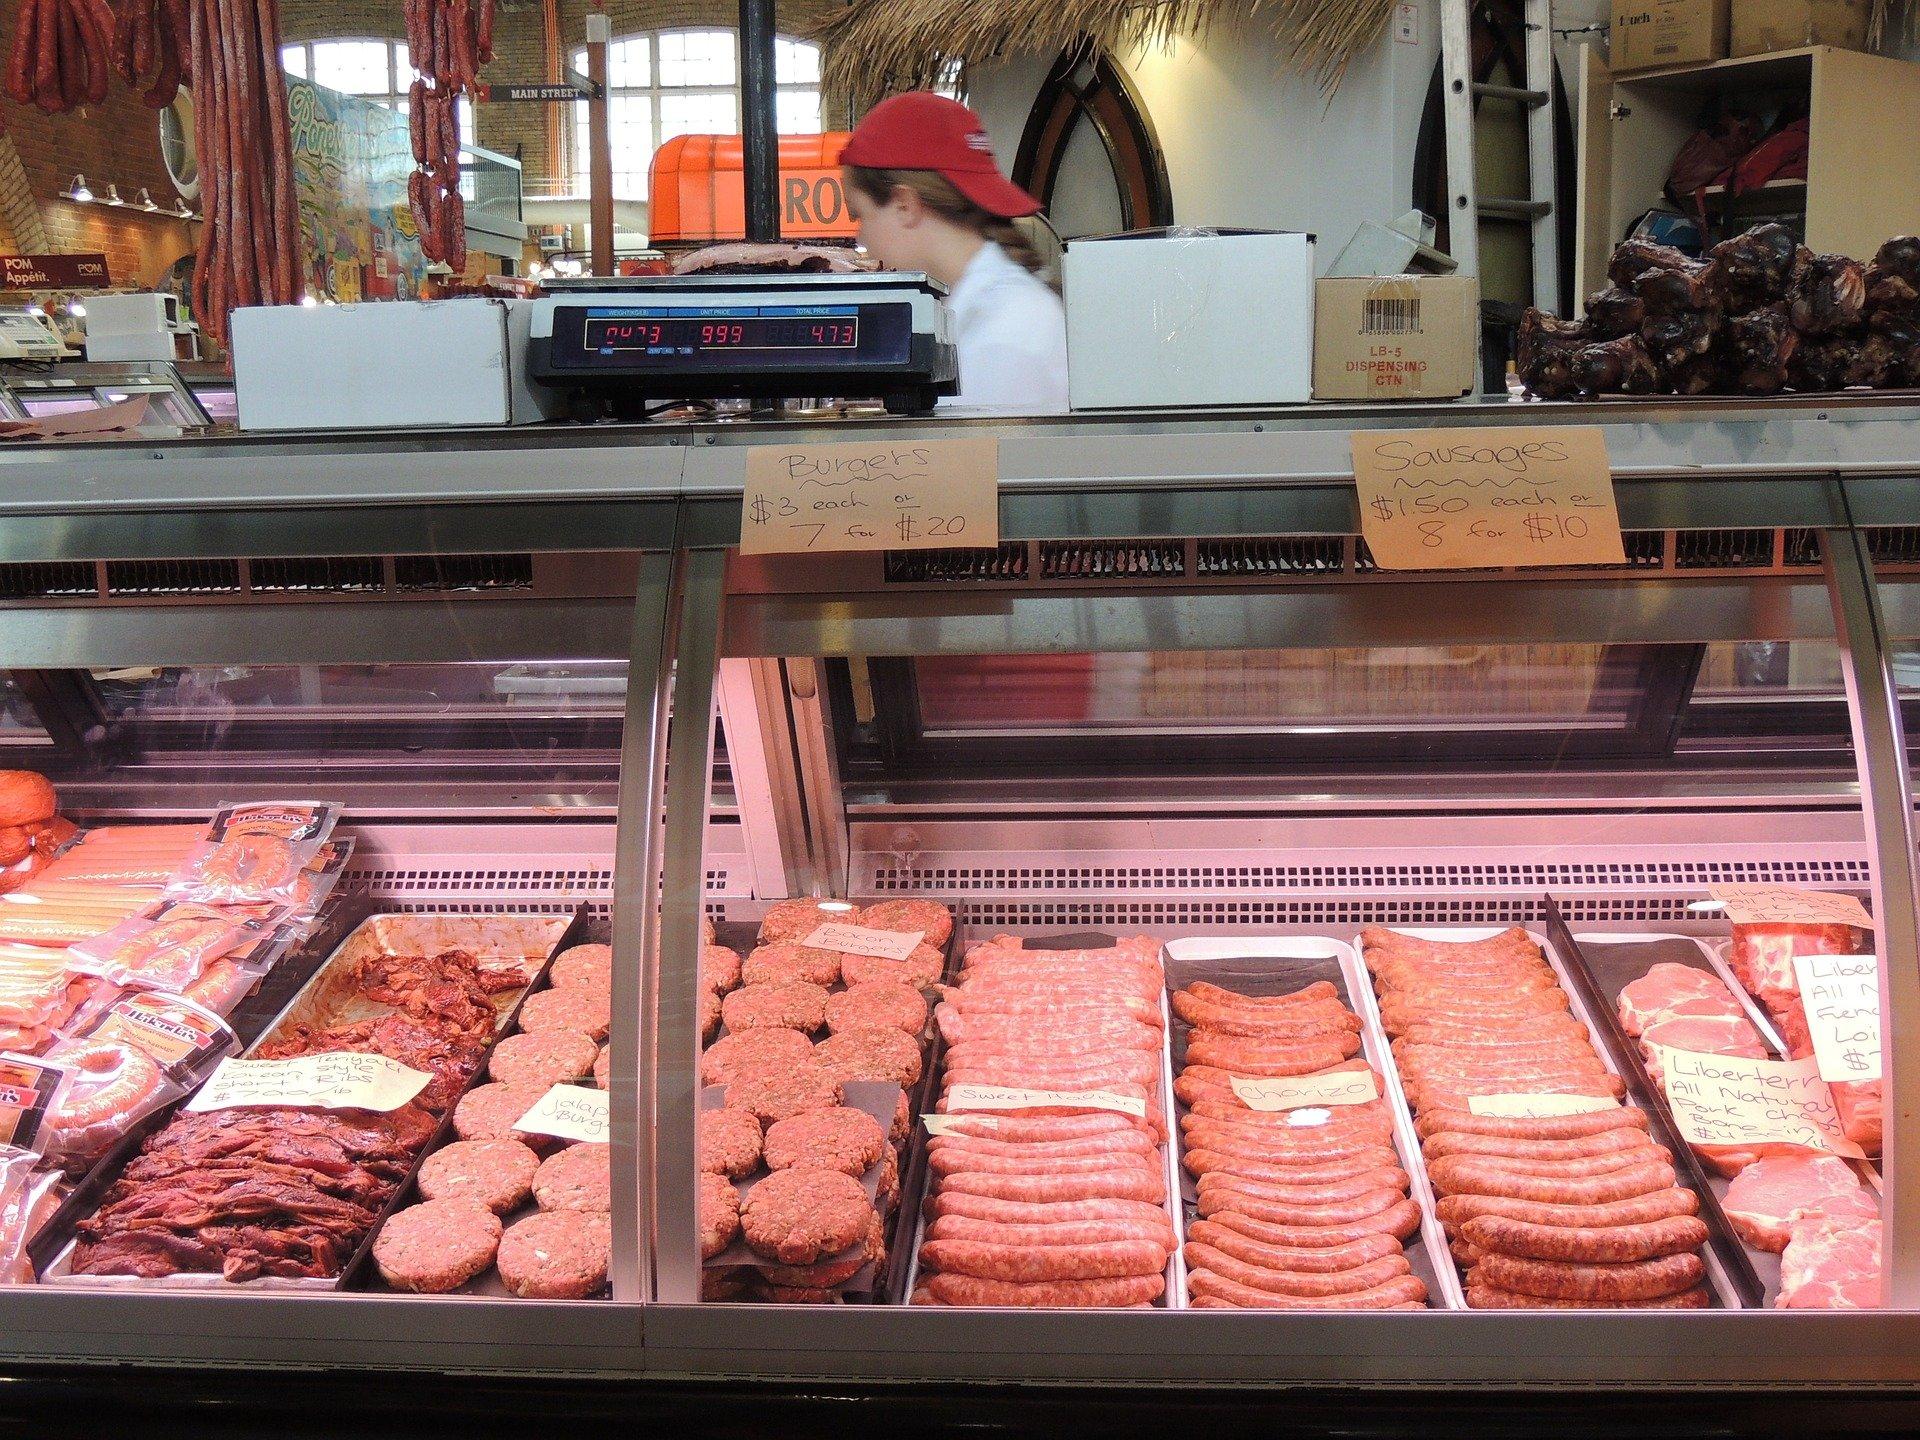 Butchershop meat case